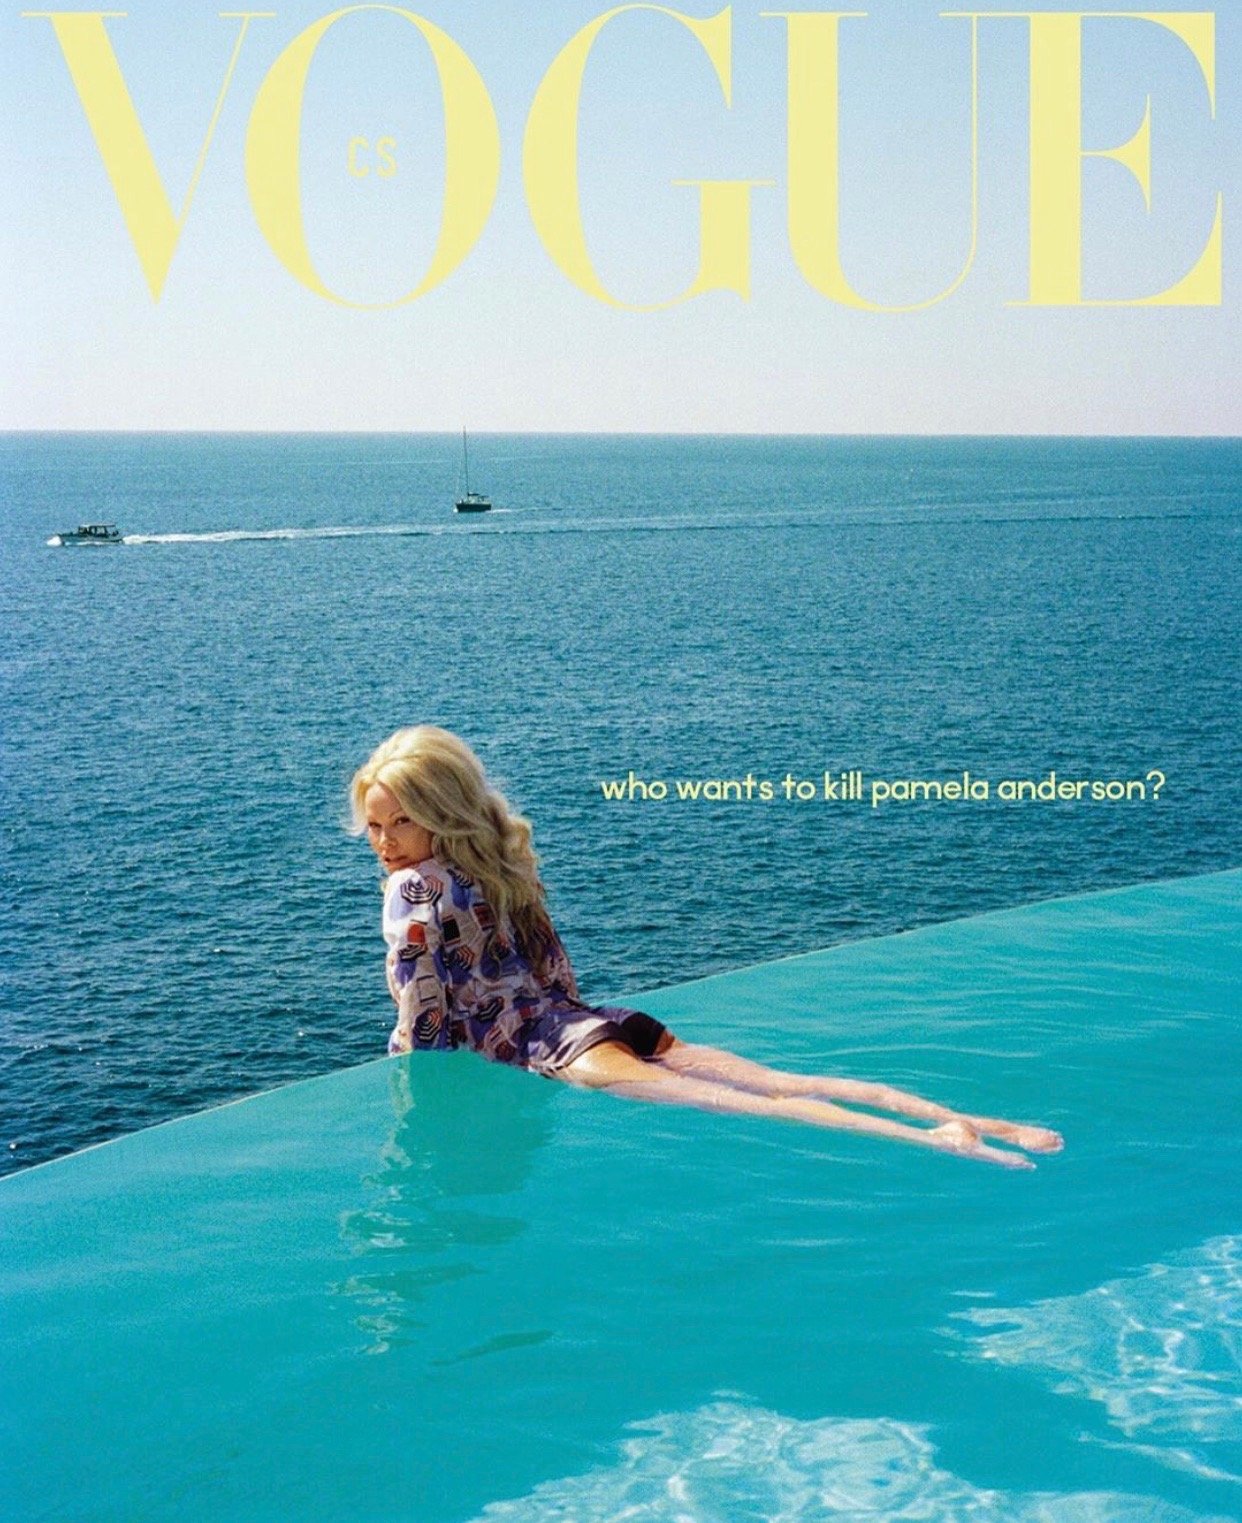 Памела Андерсон впервые появилась на обложке Vogue